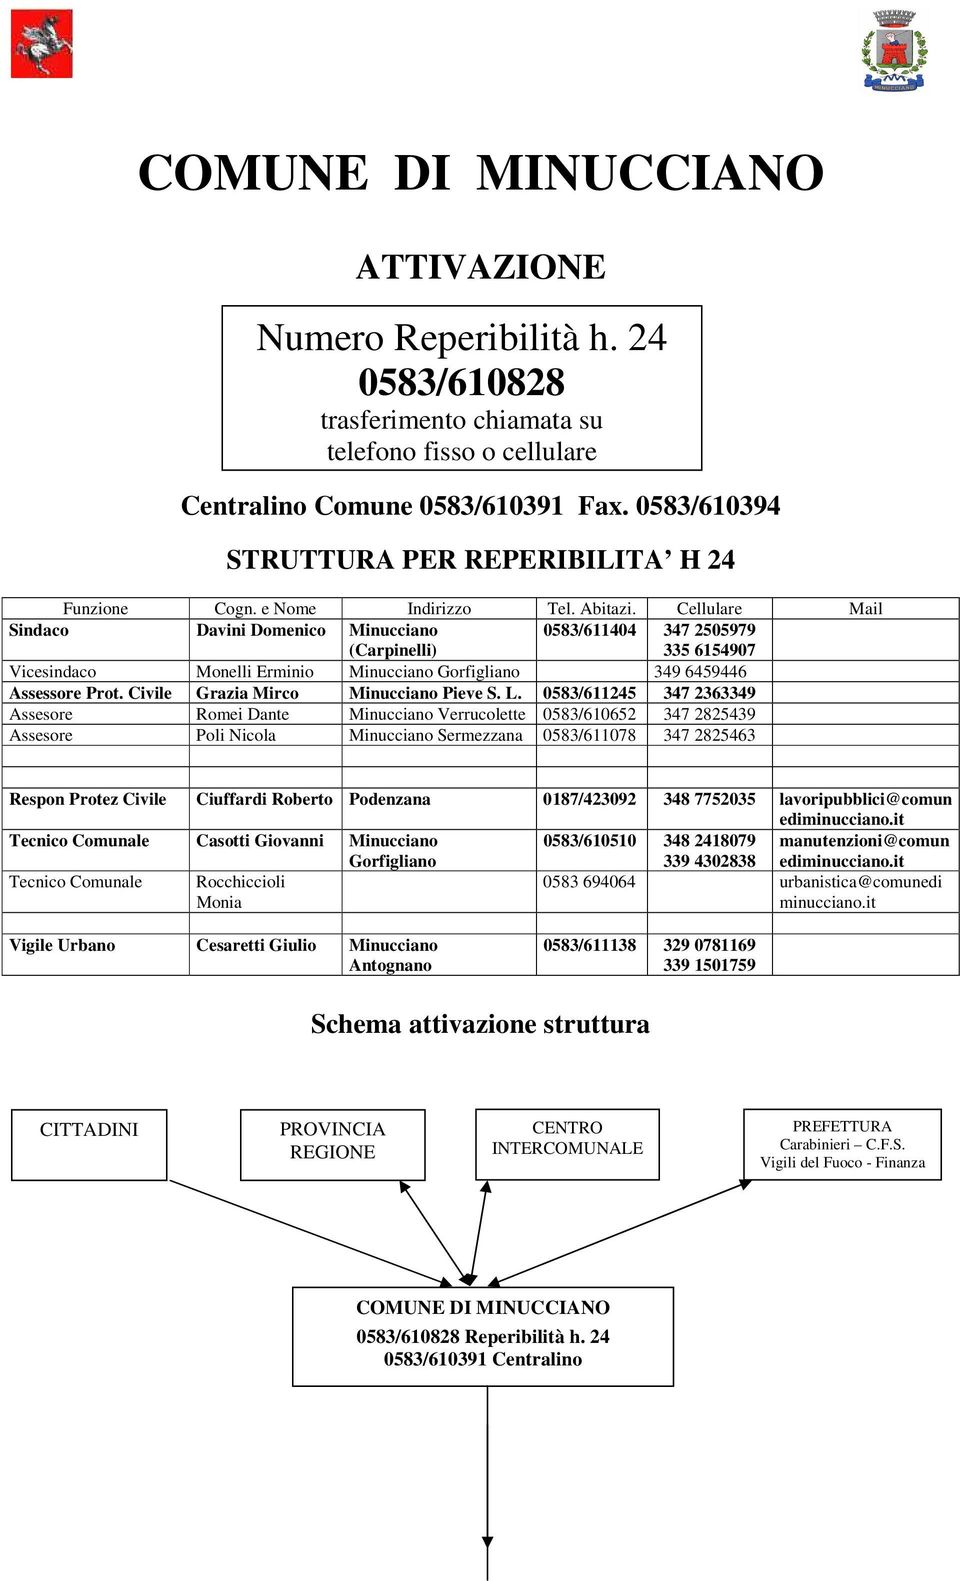 Cellulare Mail Sindaco Davini Domenico Minucciano (Carpinelli) 0583/611404 347 2505979 335 6154907 Vicesindaco Monelli Erminio Minucciano Gorfigliano 349 6459446 Assessore Prot.